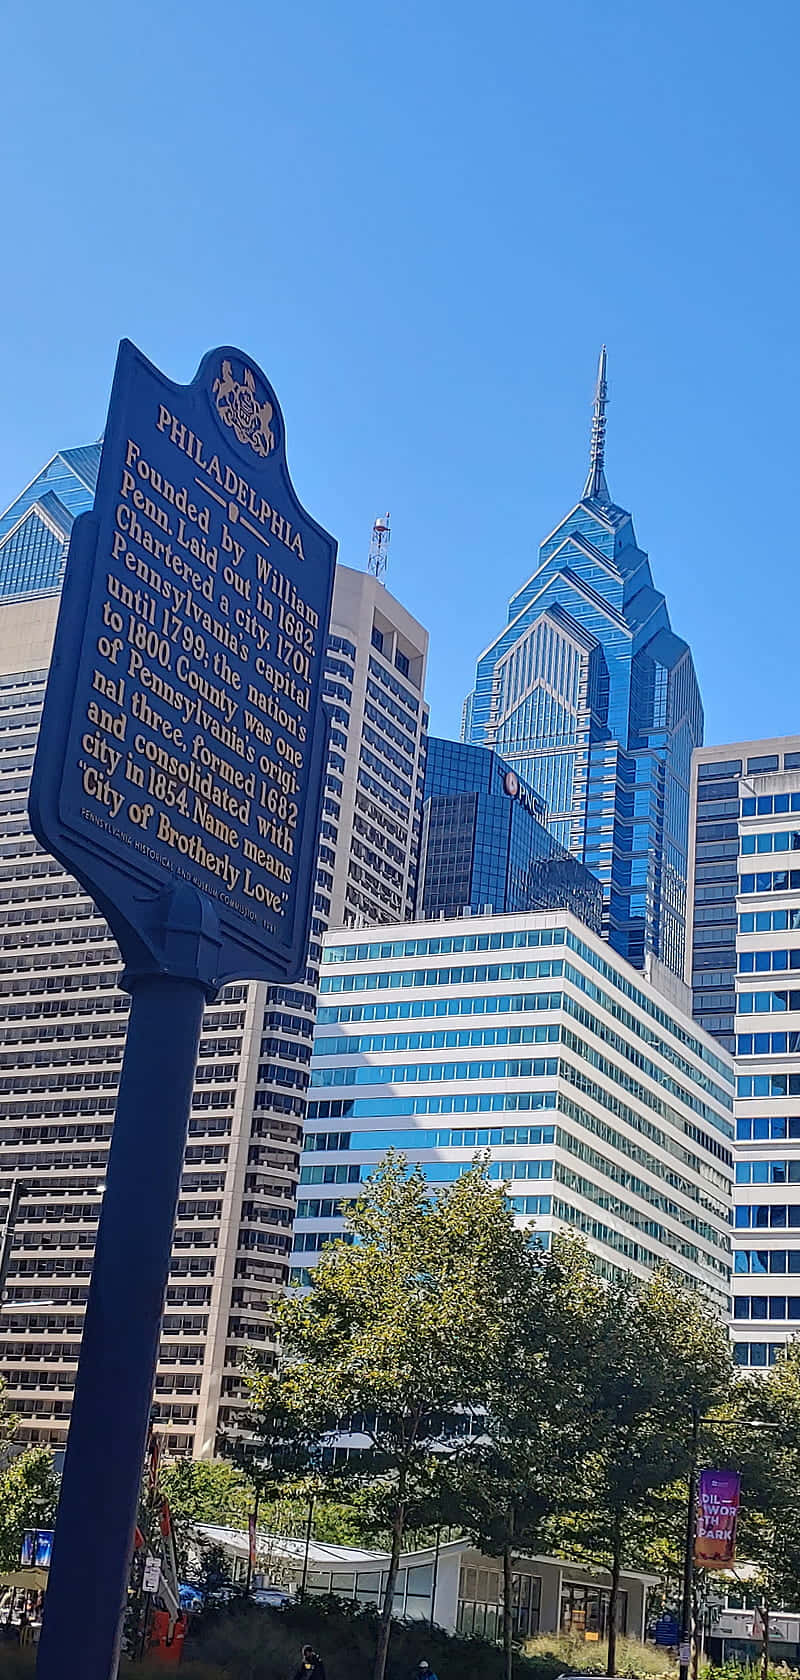 Nyd et lys og smukt dag i centrum af Philadelphia. Wallpaper